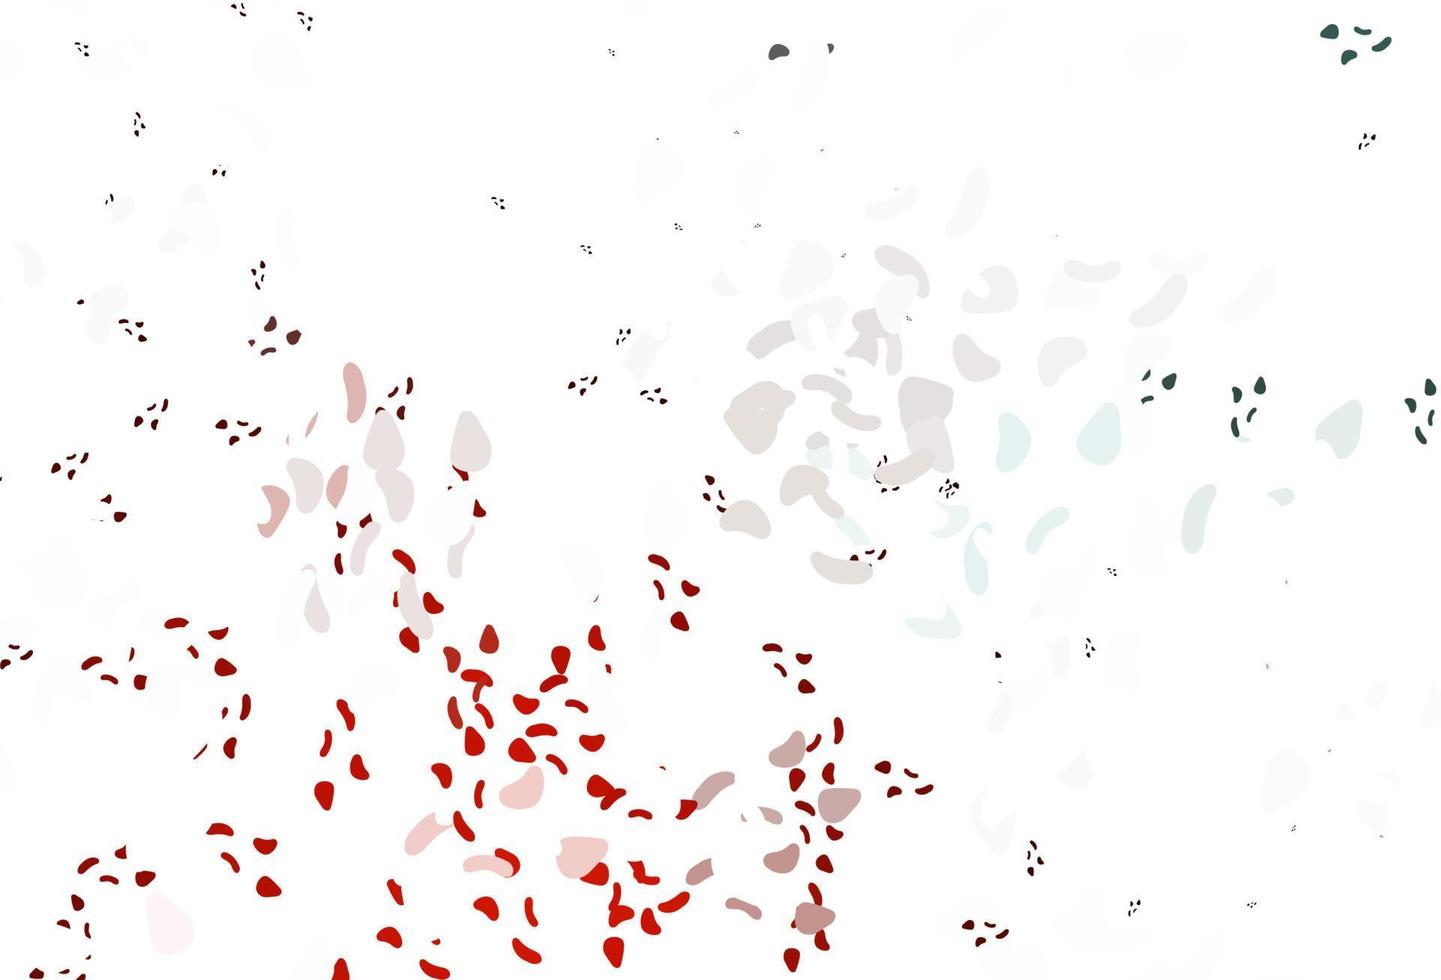 pano de fundo vector vermelho claro com formas abstratas.